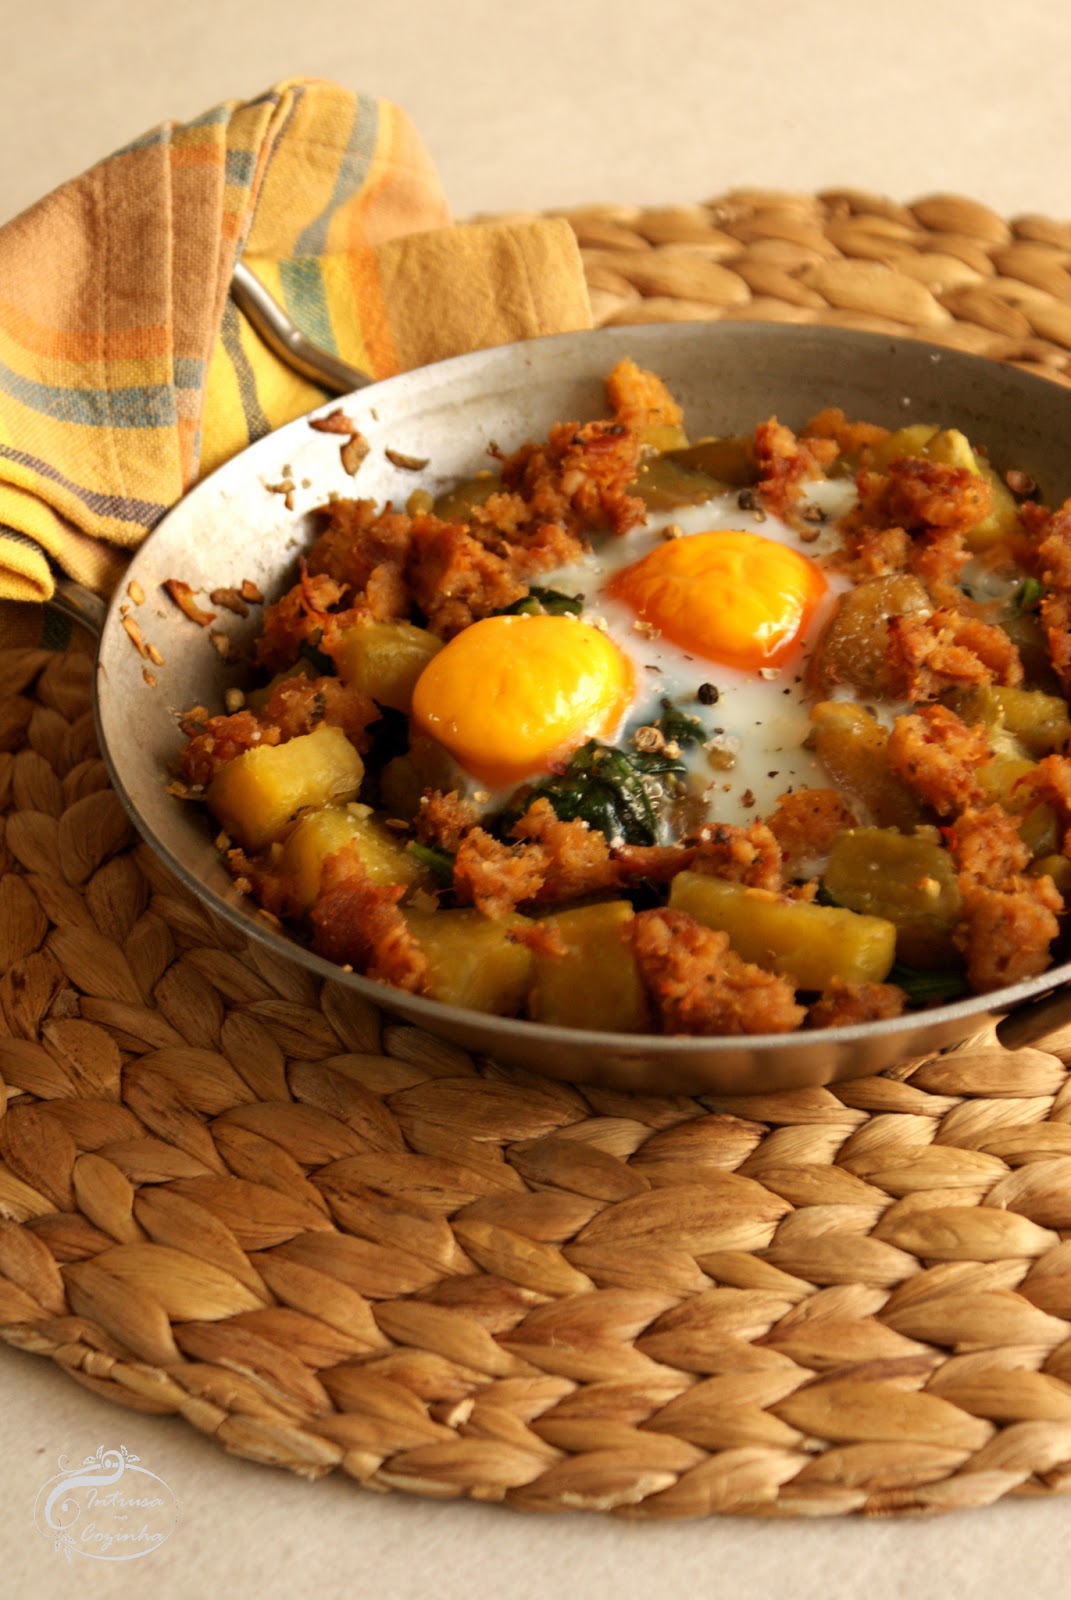 Batata Doce com Ovos & Alheira de Borrego {Sweet Potato with Eggs & Lamb's Alheira}